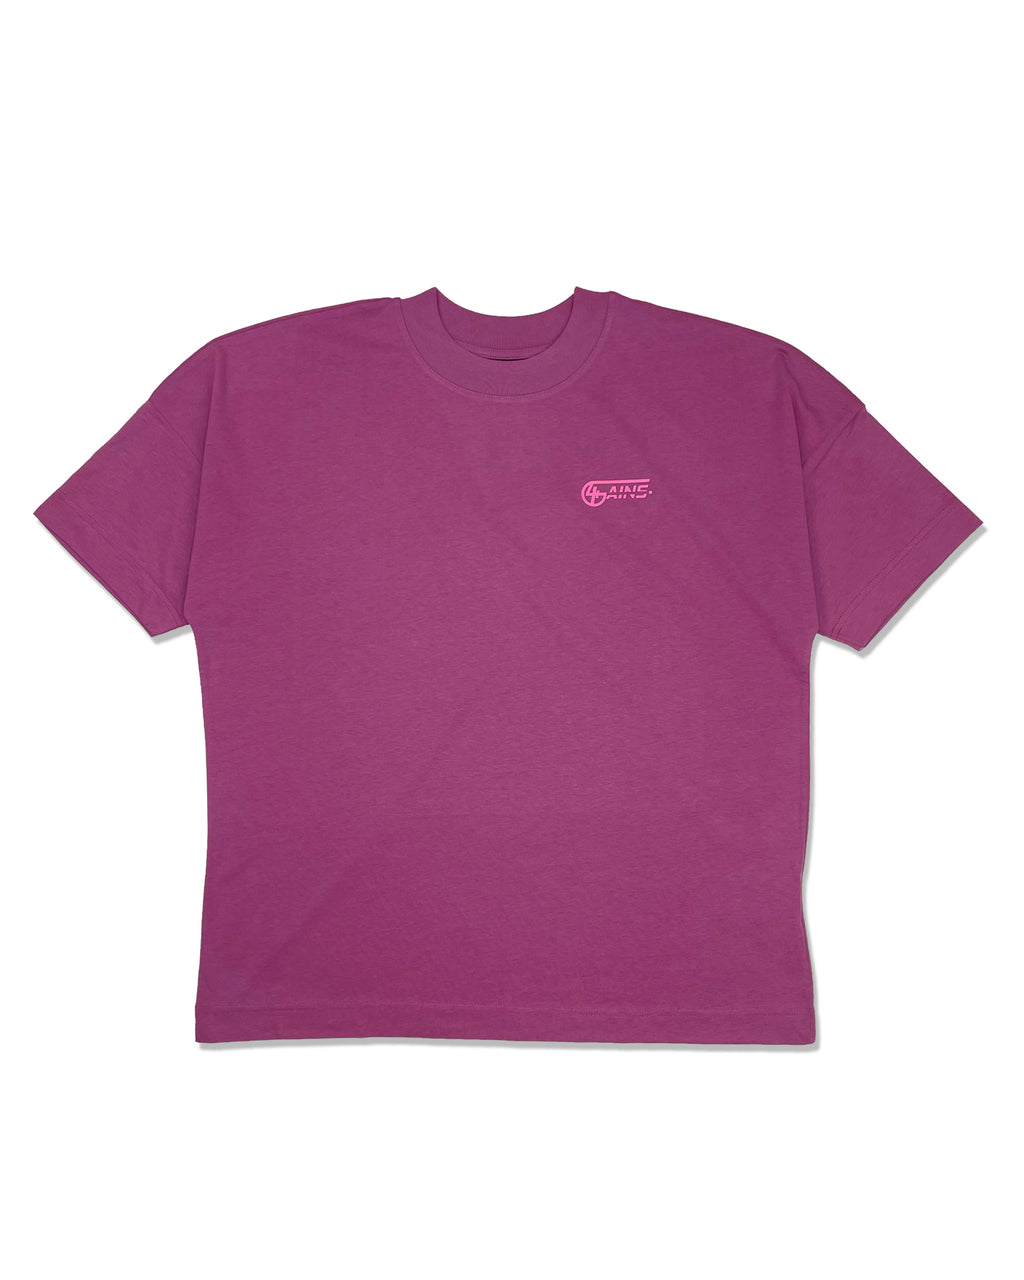 4GAINS Summer Vice T-Shirt in der Farbe altrosa mit rosanem 4GAINS Logo auf der linken Brust